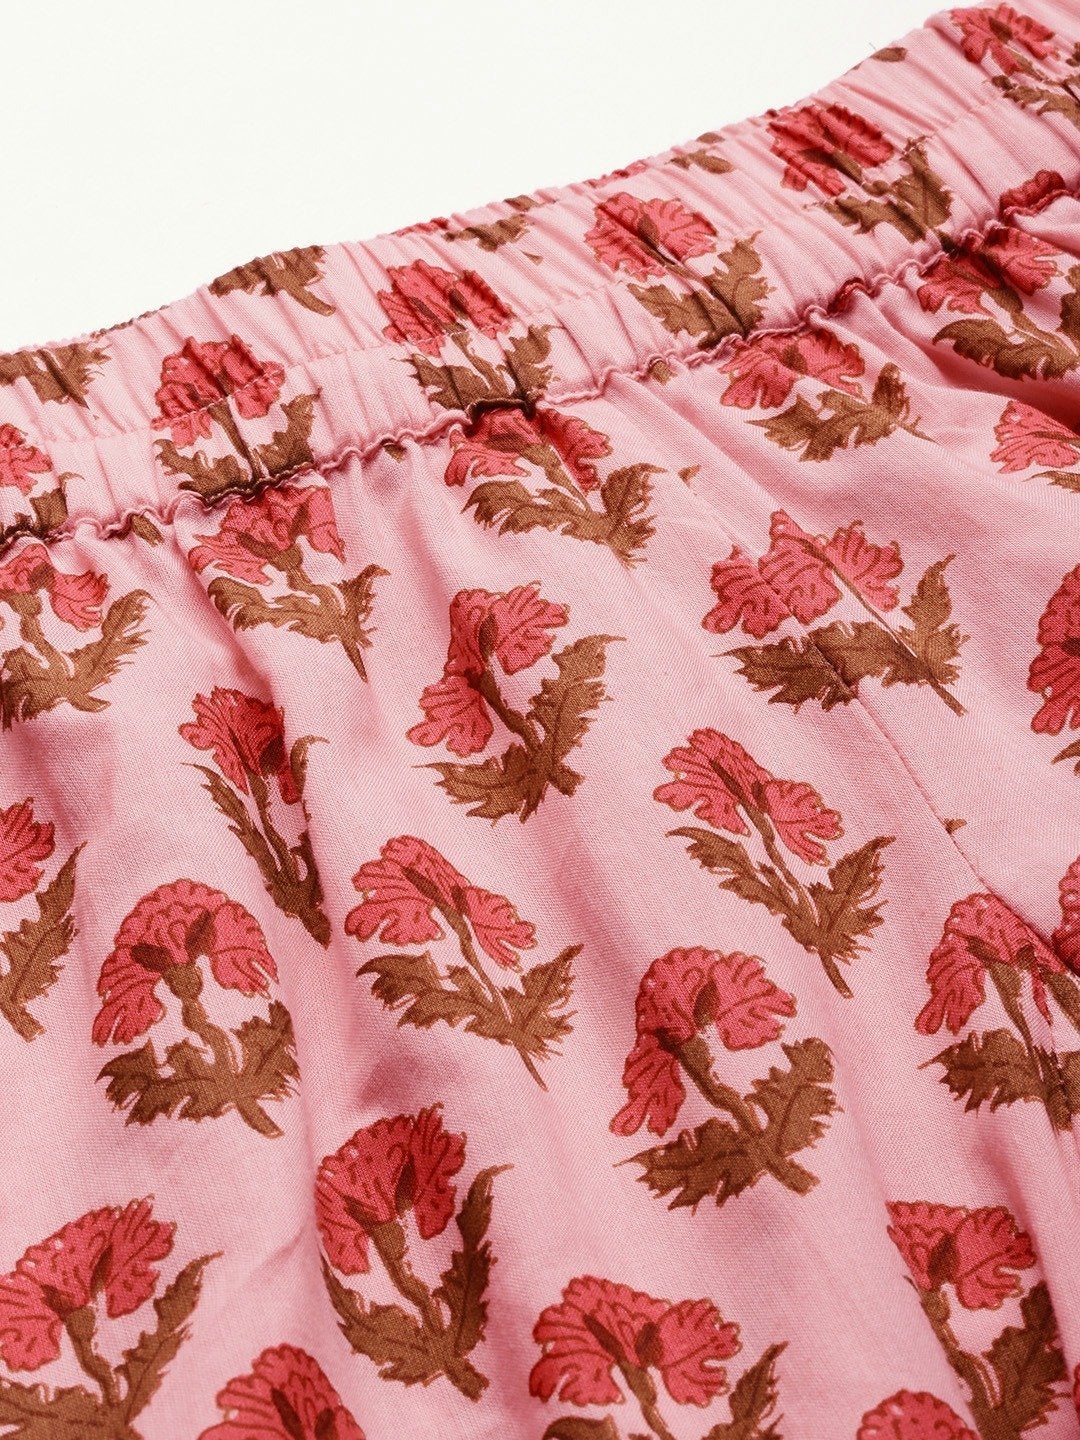 Women's Pink Cotton Loungewear /Nightwear Set  - Wahenoor